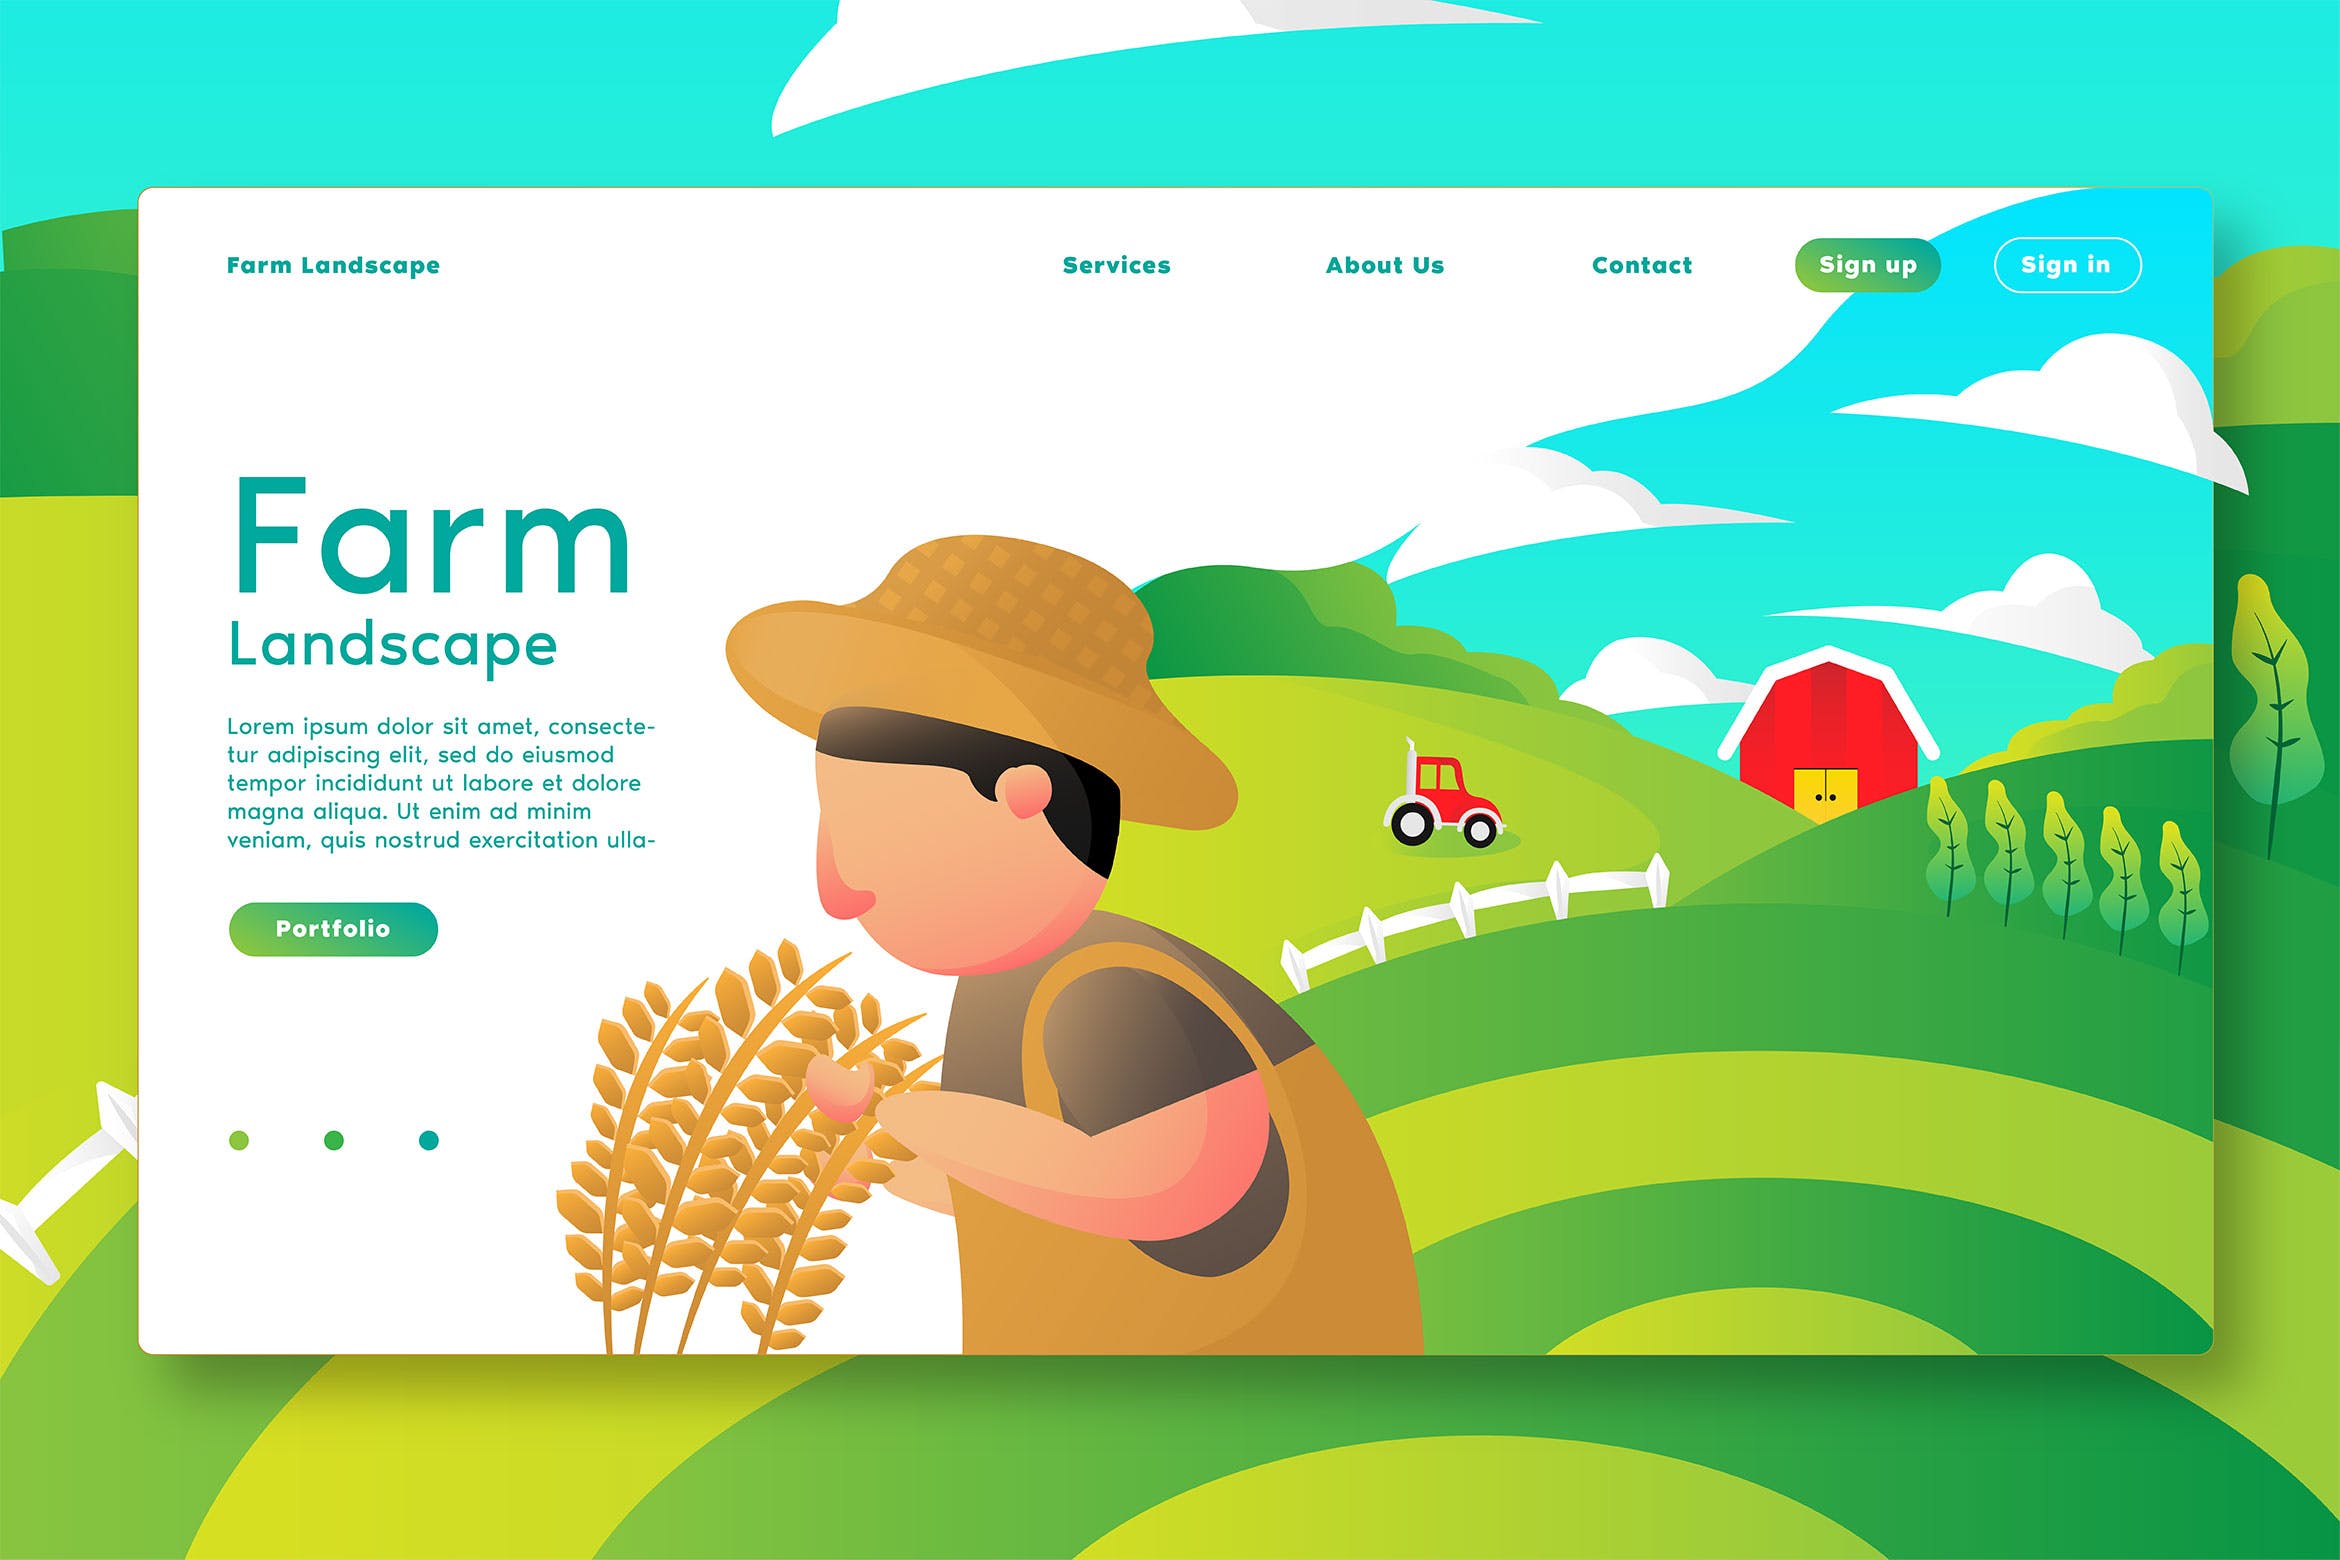 农场主题网站设计矢量插画设计素材 Farm Lanscape – Web Header & Vector Template G插图